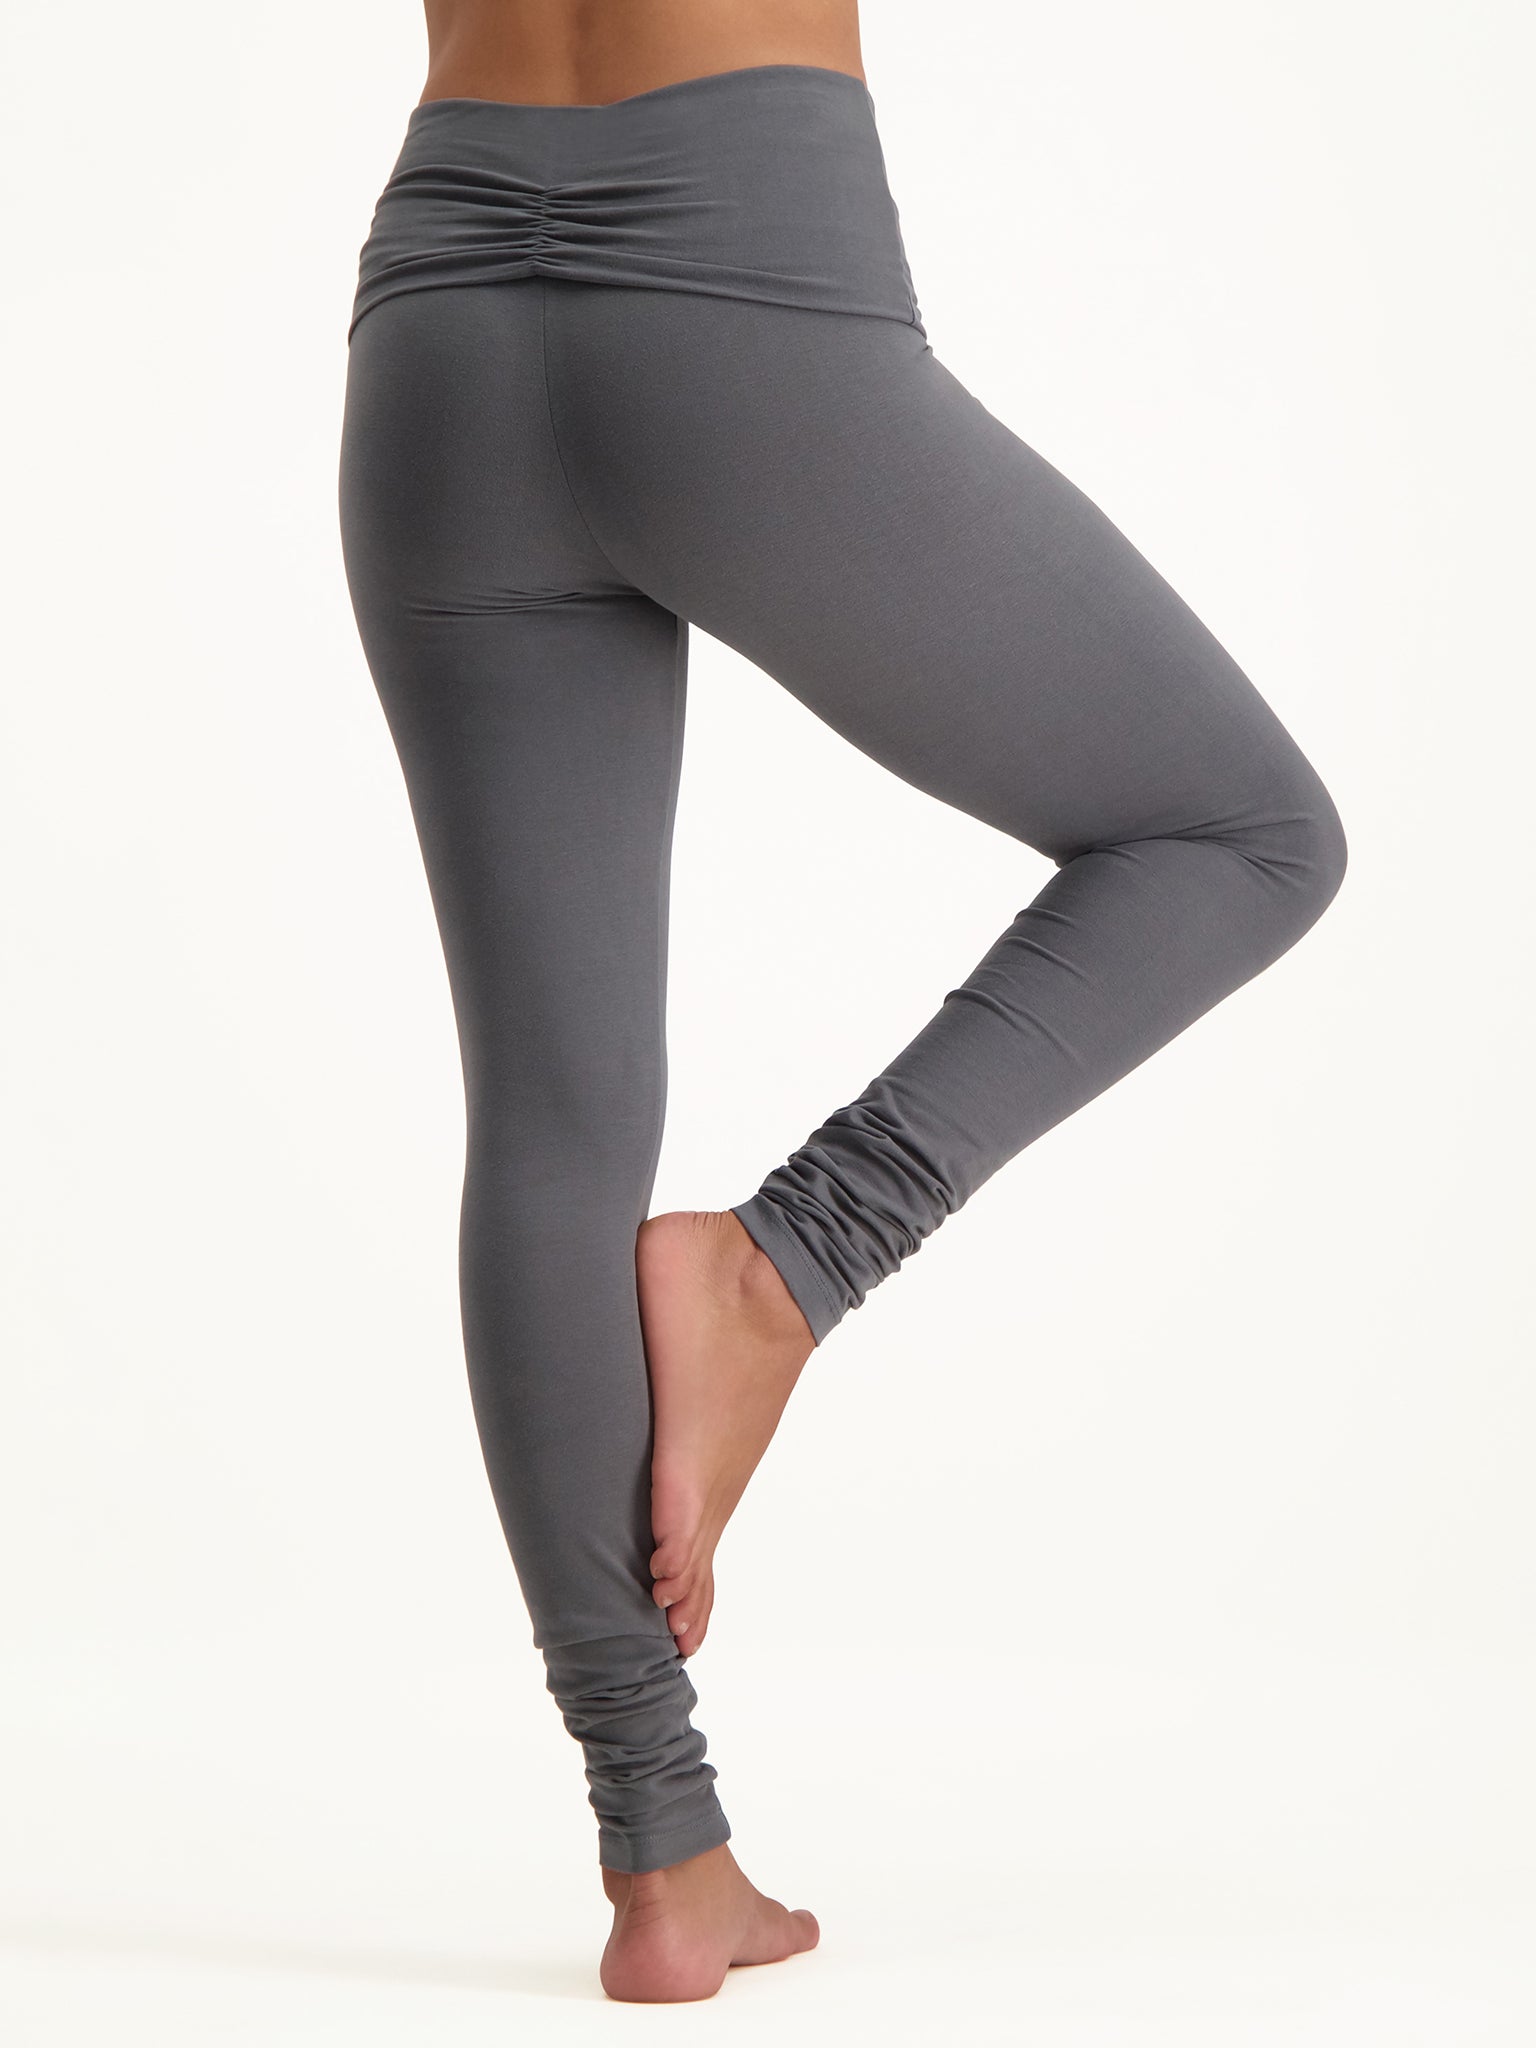 Yoga Leggings, Yoga Pants & Activewear